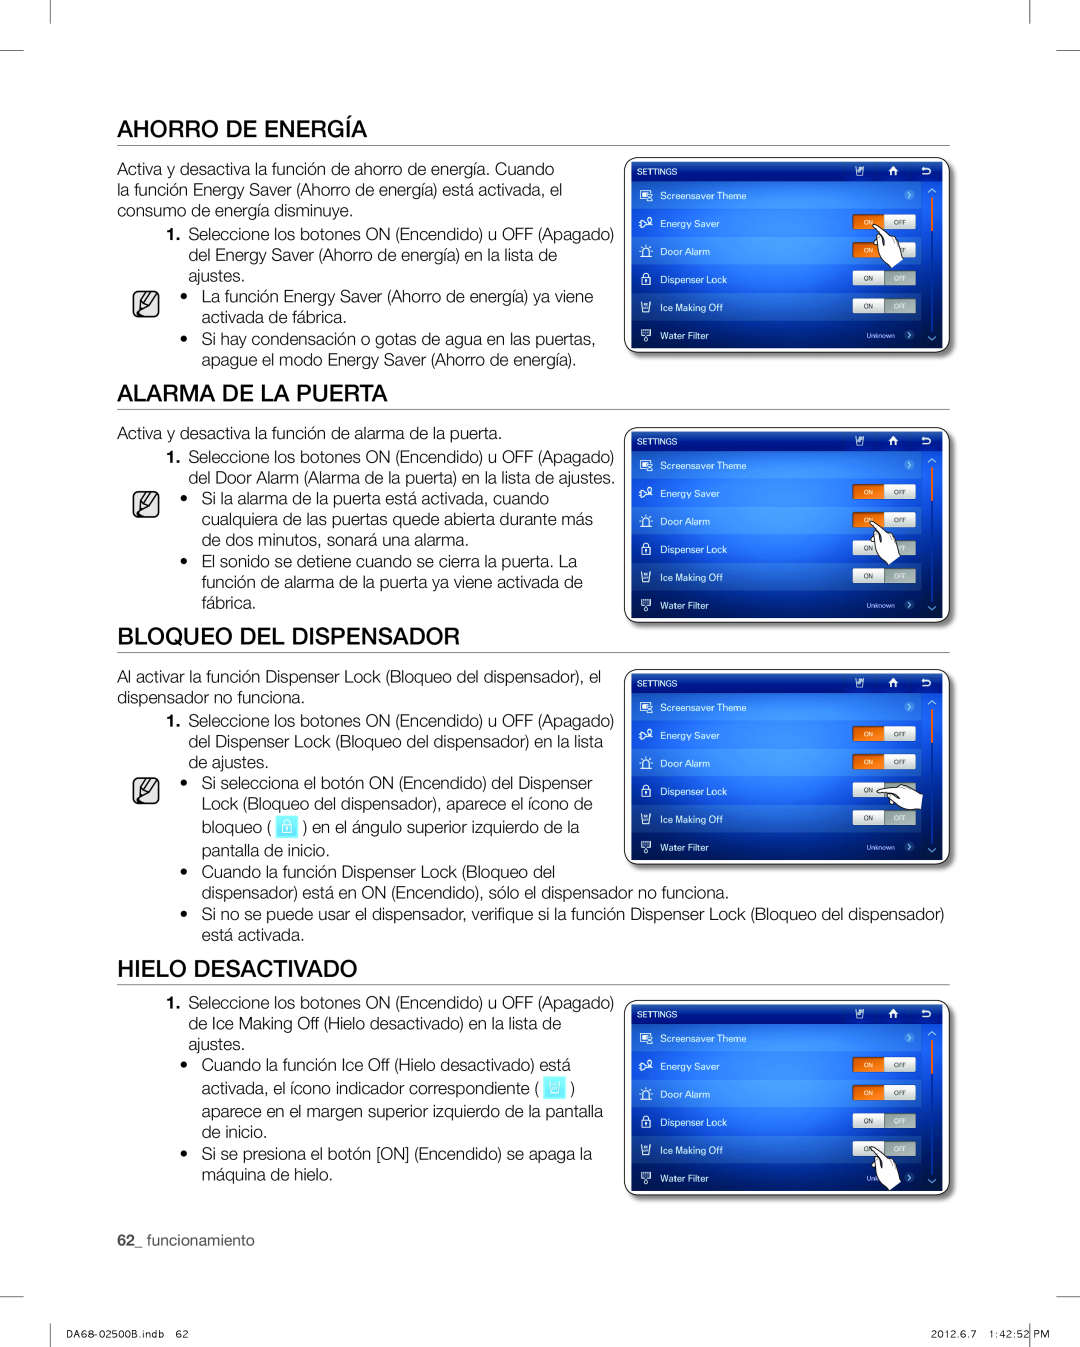 Samsung RSG309AARS user manual Ahorro De Energía, Alarma De La Puerta, Bloqueo del dispensador, Hielo Desactivado 